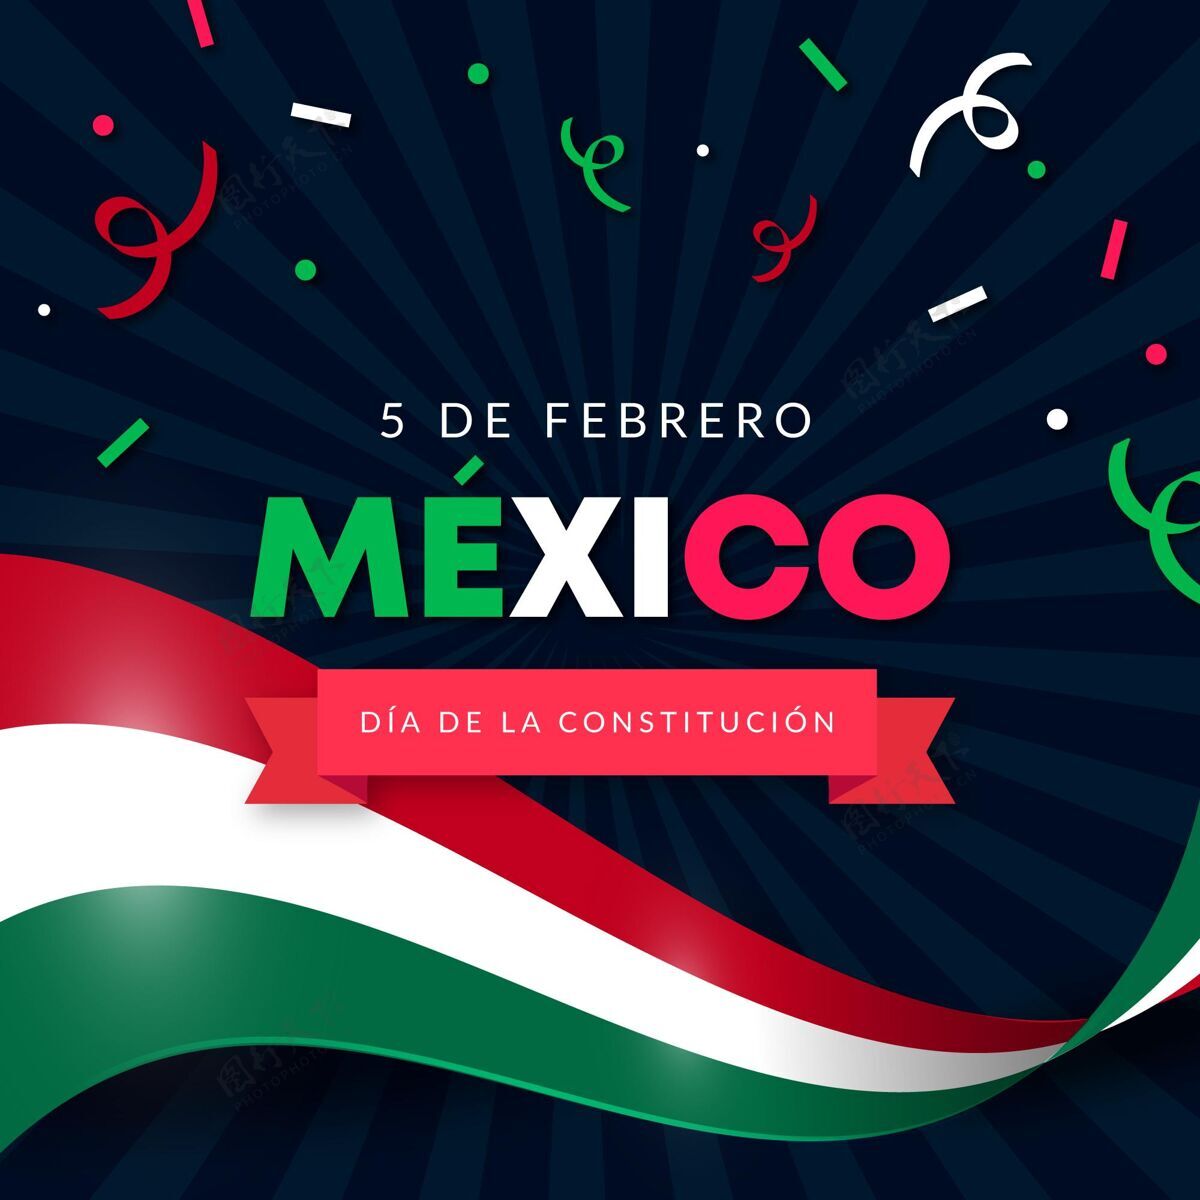 民主墨西哥国旗渐变宪法日壁纸第五革命节日